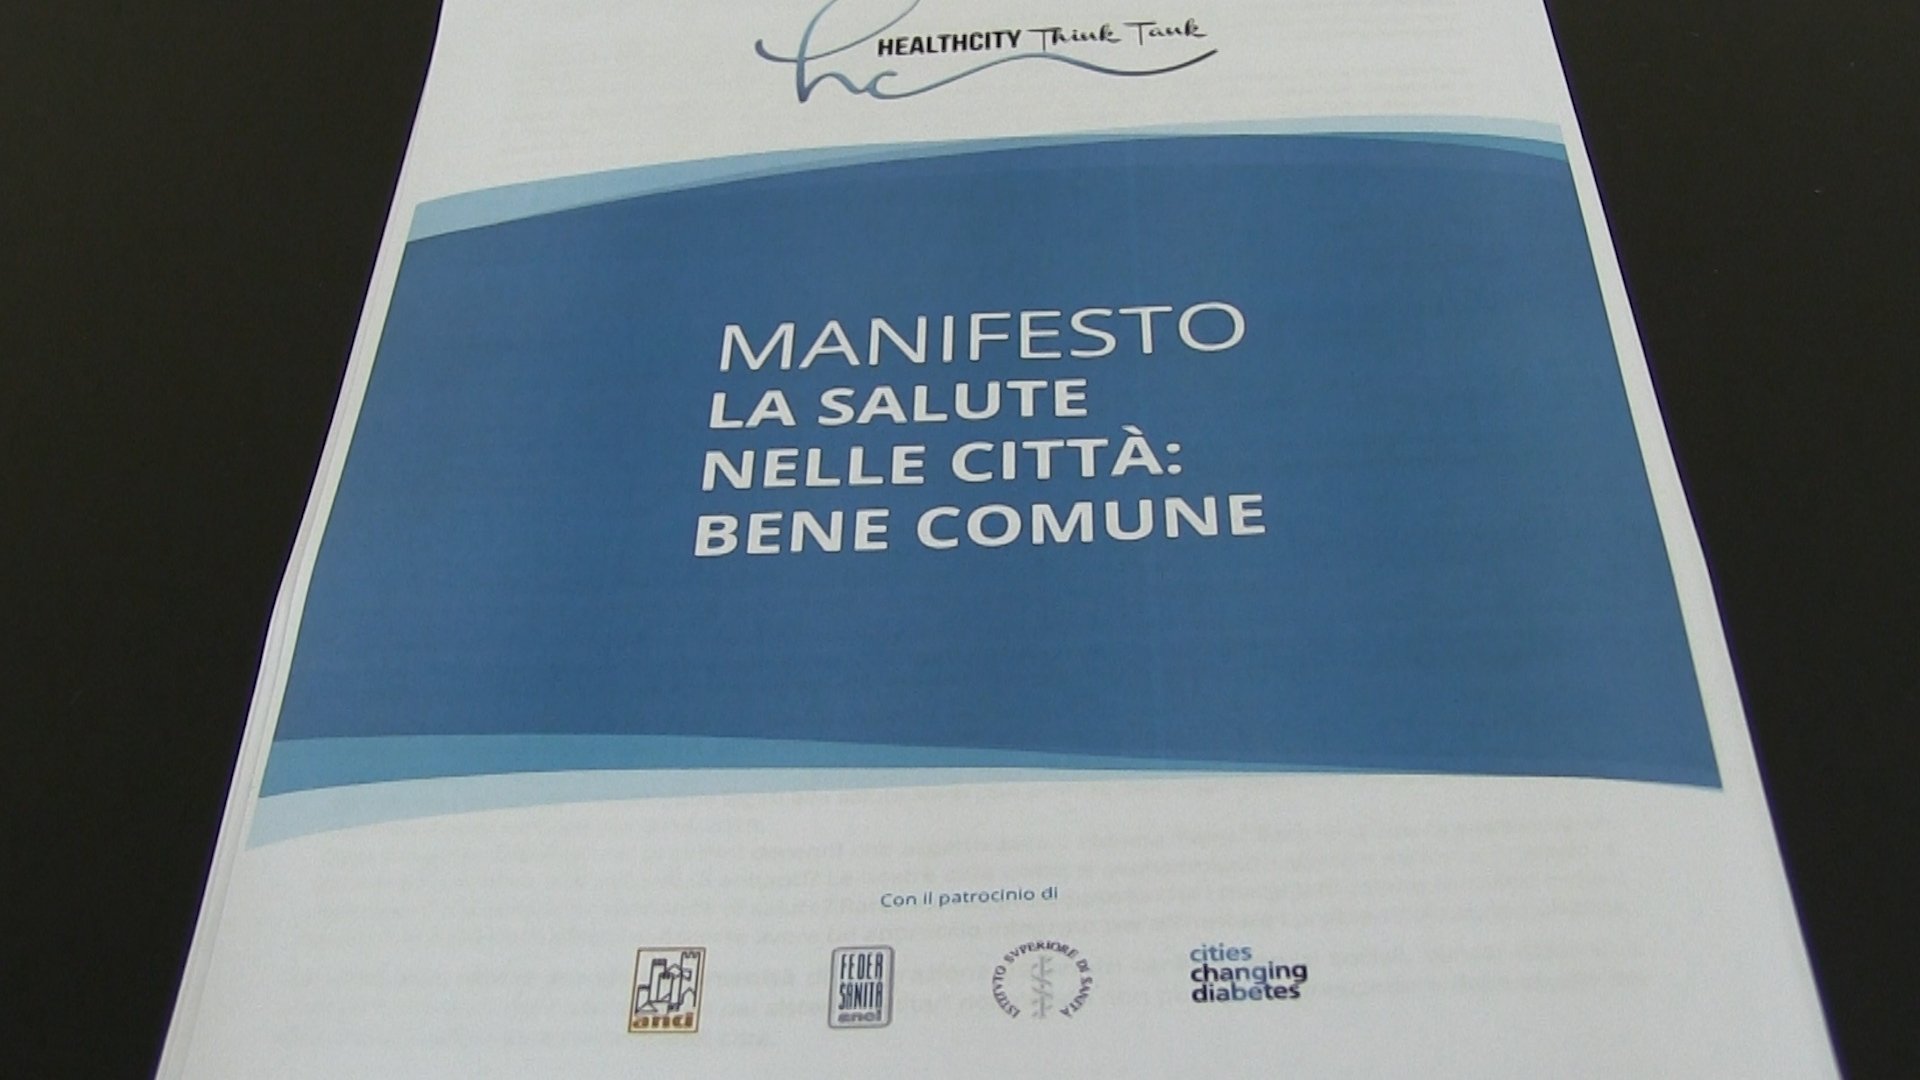 Presentato il Manifesto “La Salute nelle Città: Bene Comune”